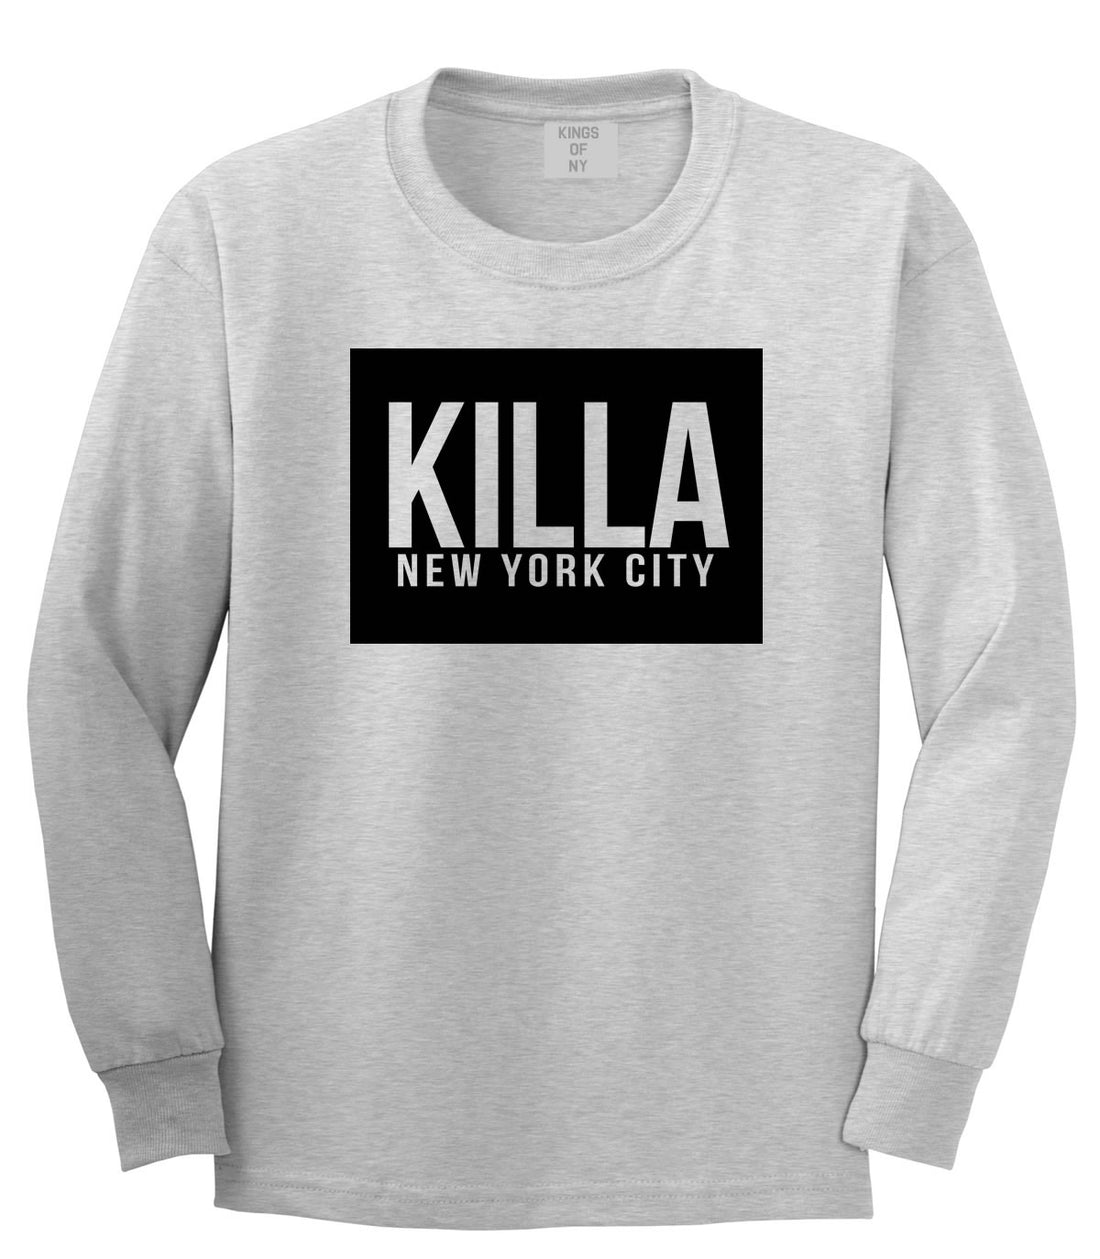 Killa New York City Harlem Boys Kids Long Sleeve T-Shirt in Grey by Kings Of NY